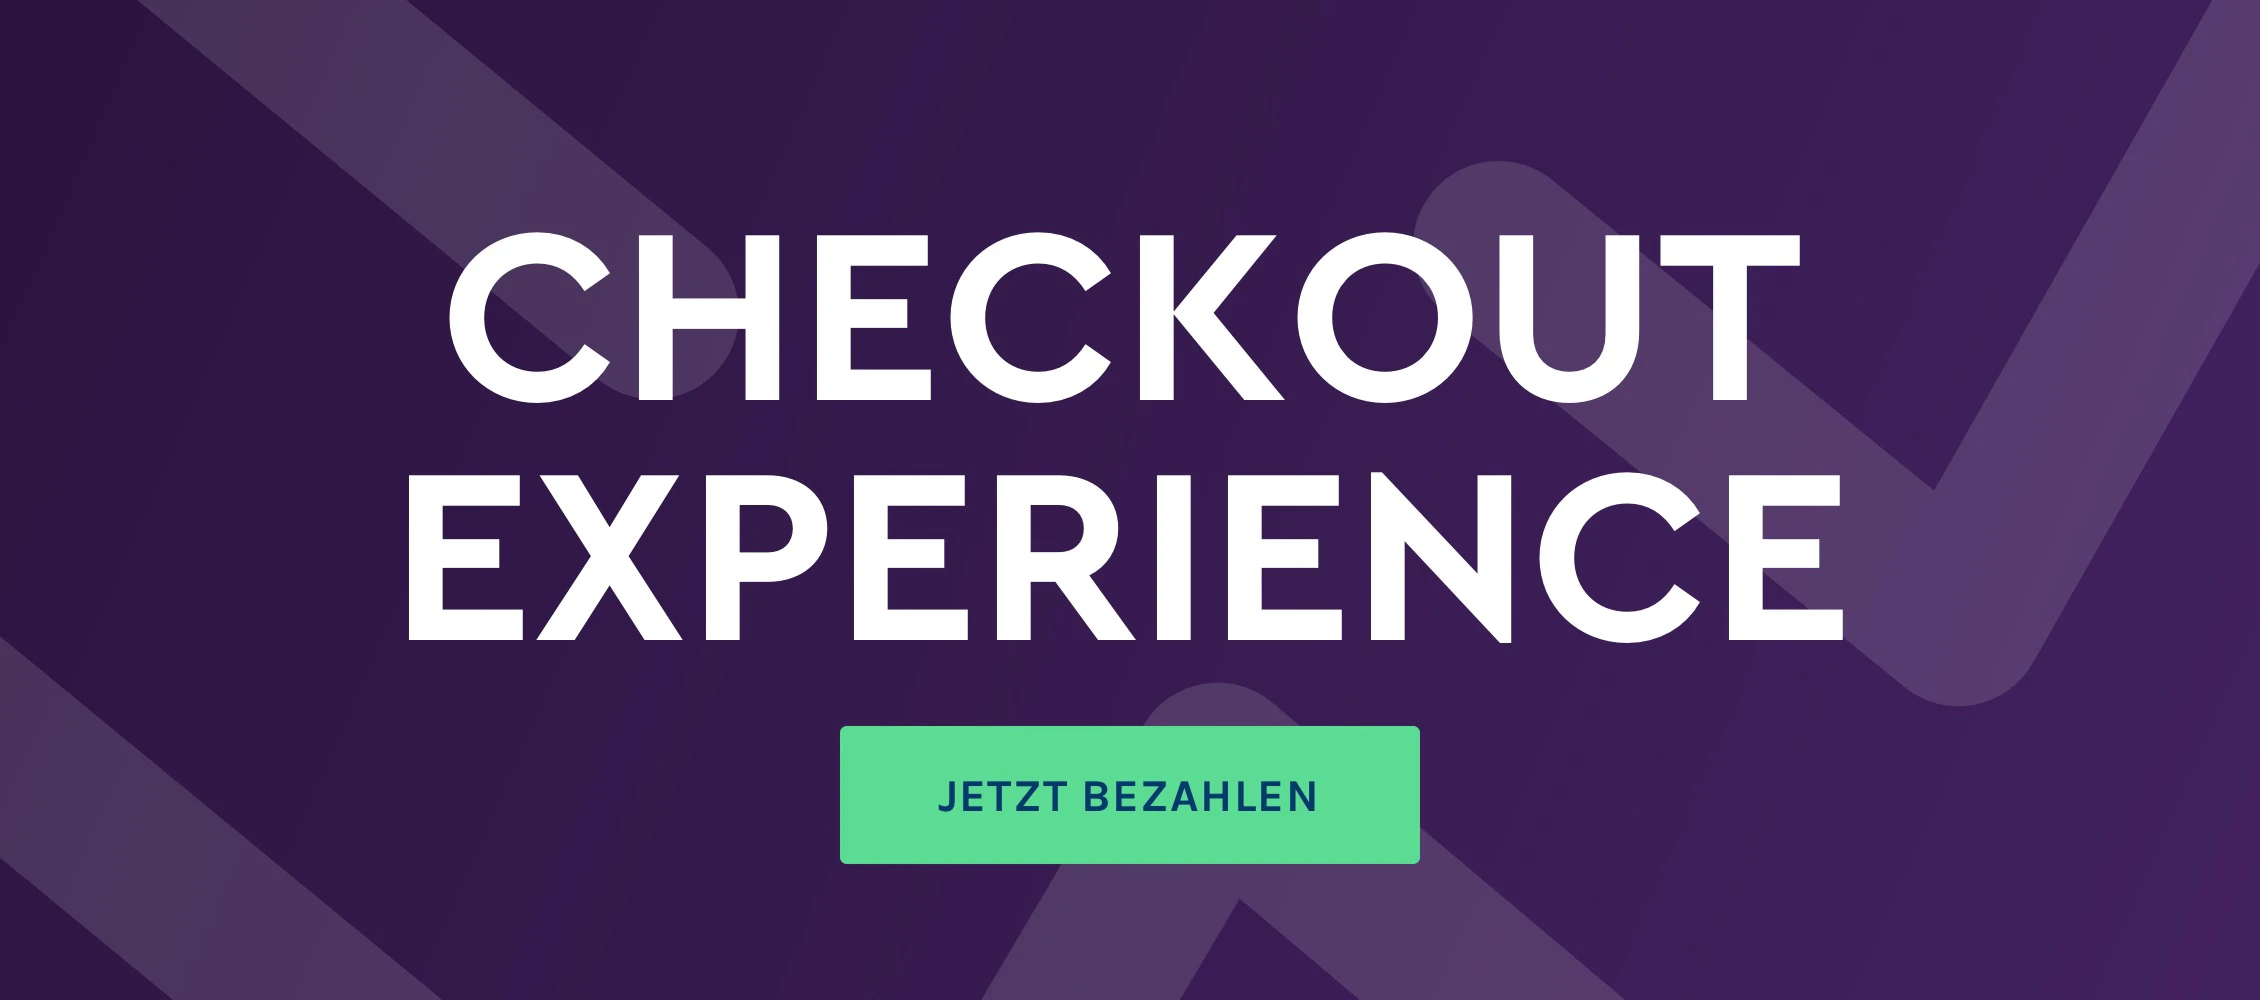 Checkout Experience: Mit weniger Klicks schneller zum Kaufabschluss